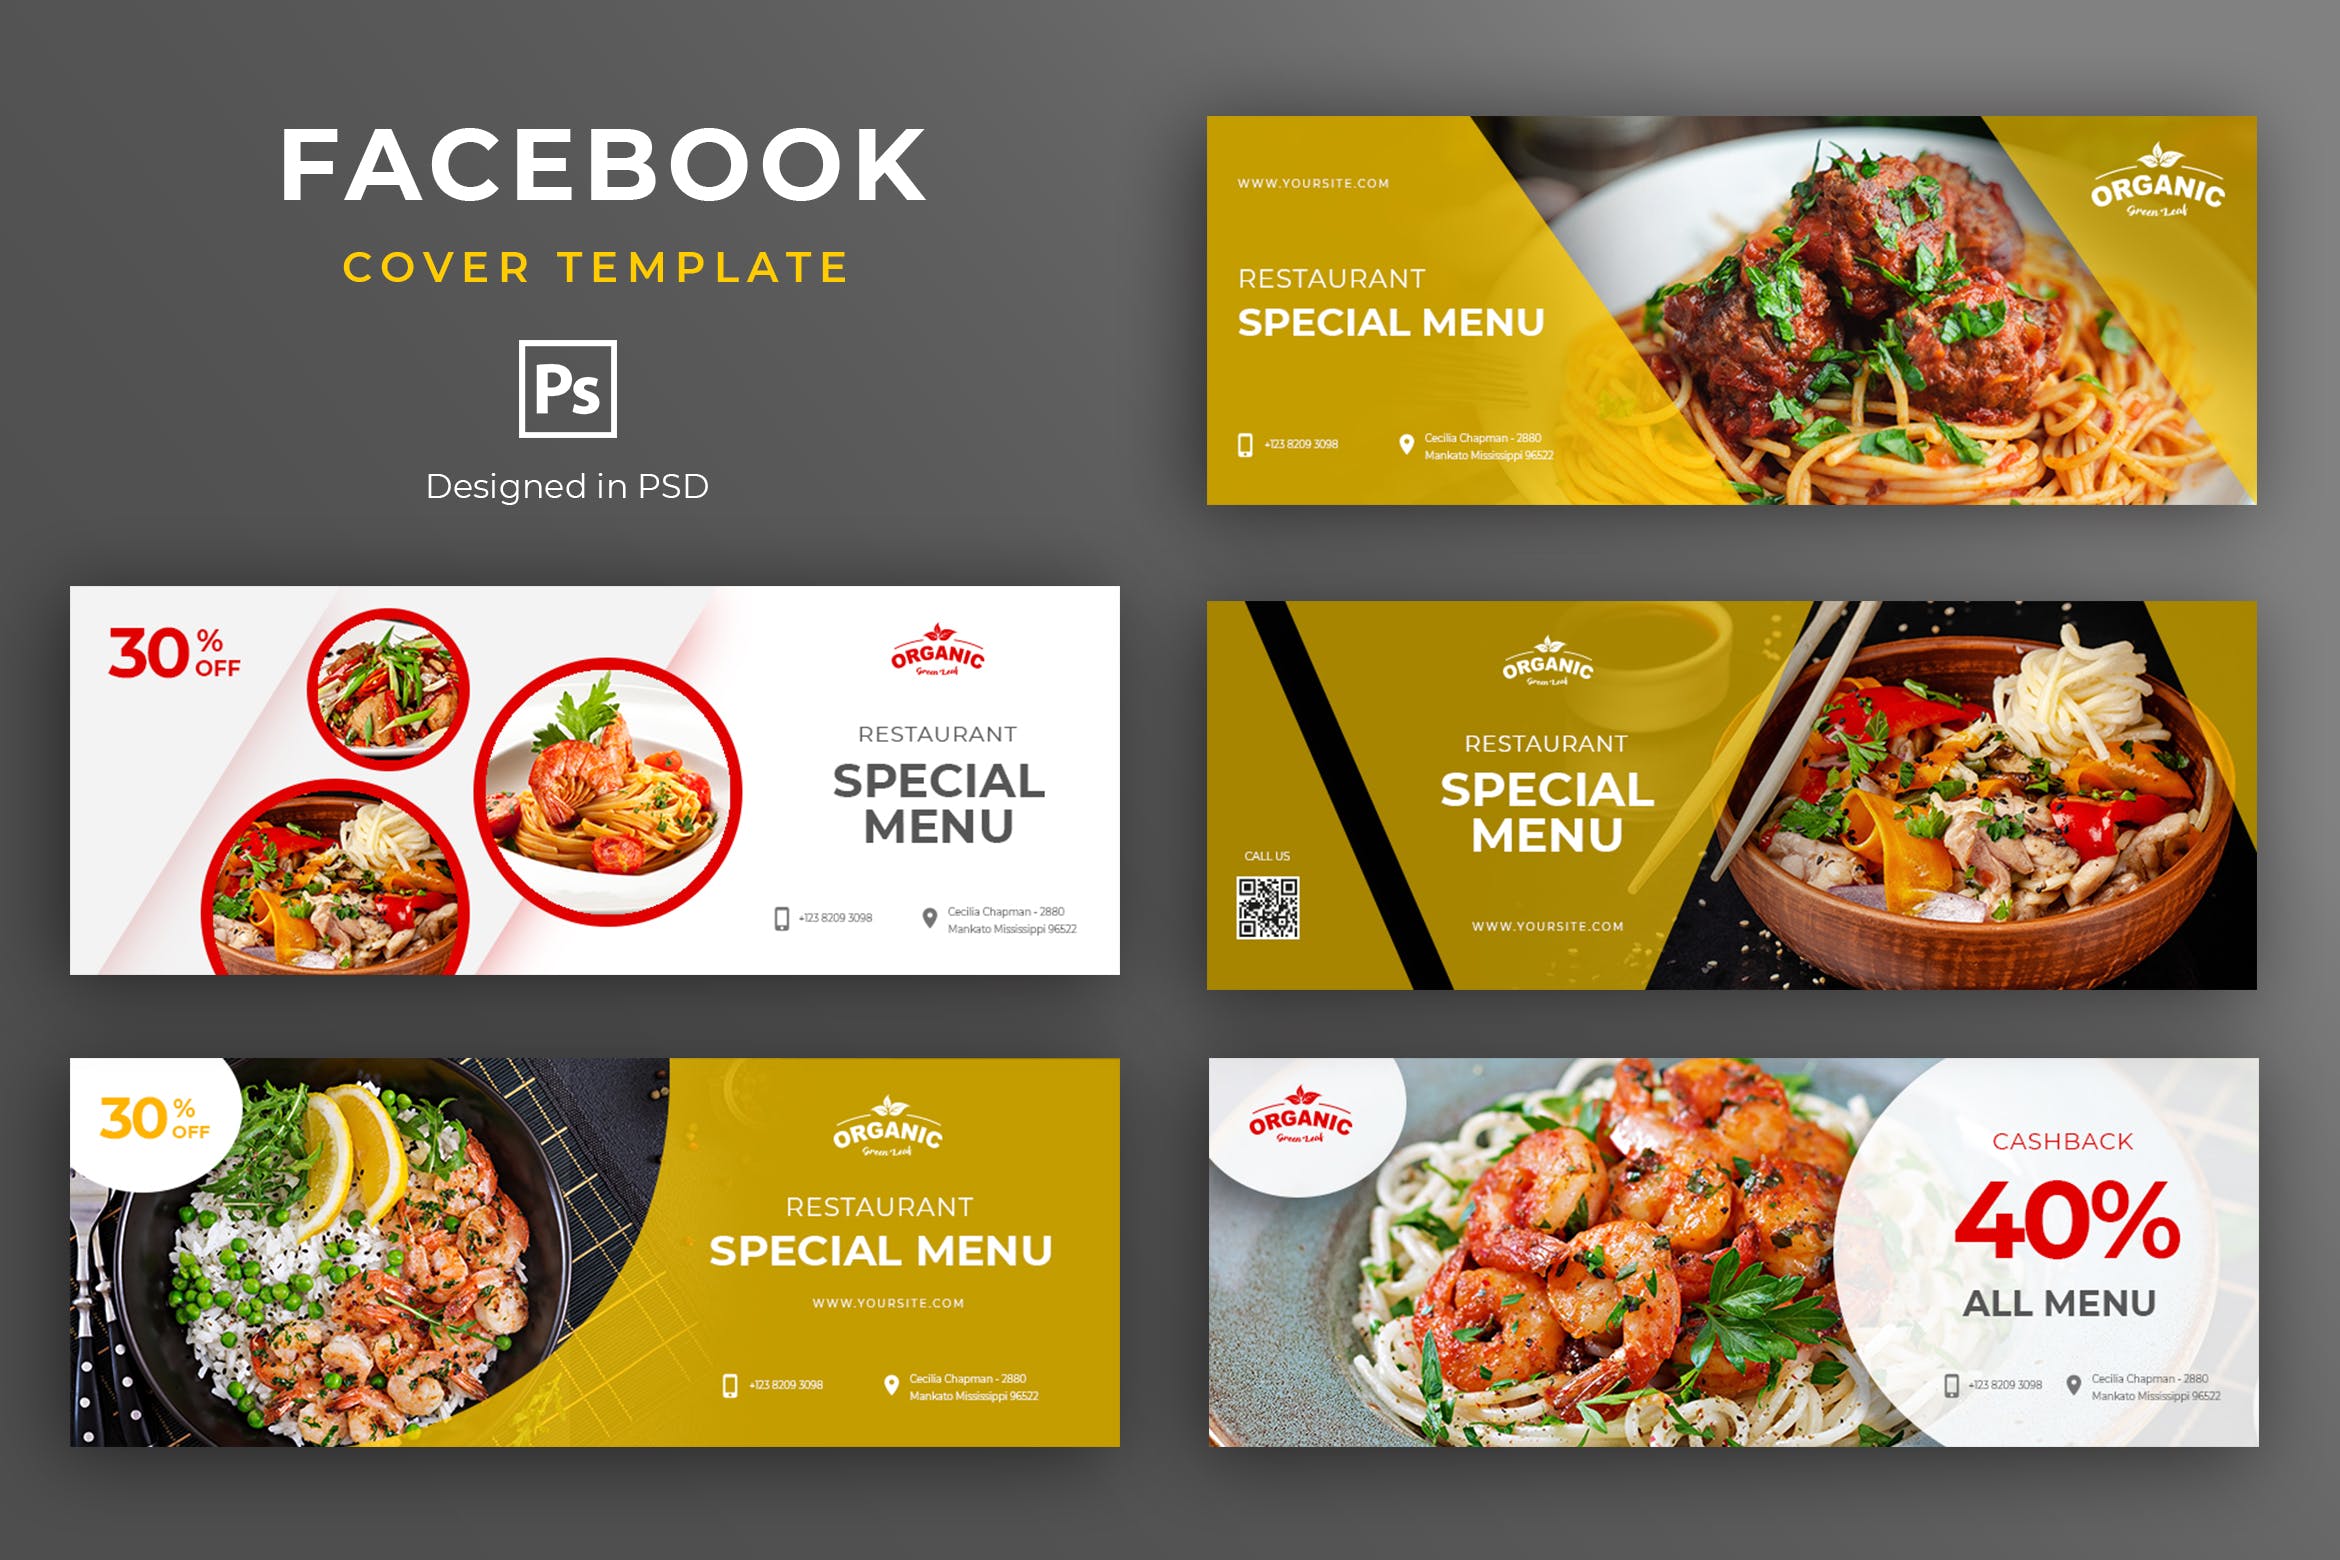 餐厅美食品牌推广Facebook主页封面设计模板16图库精选 Food and Resto Facebook Cover Template插图